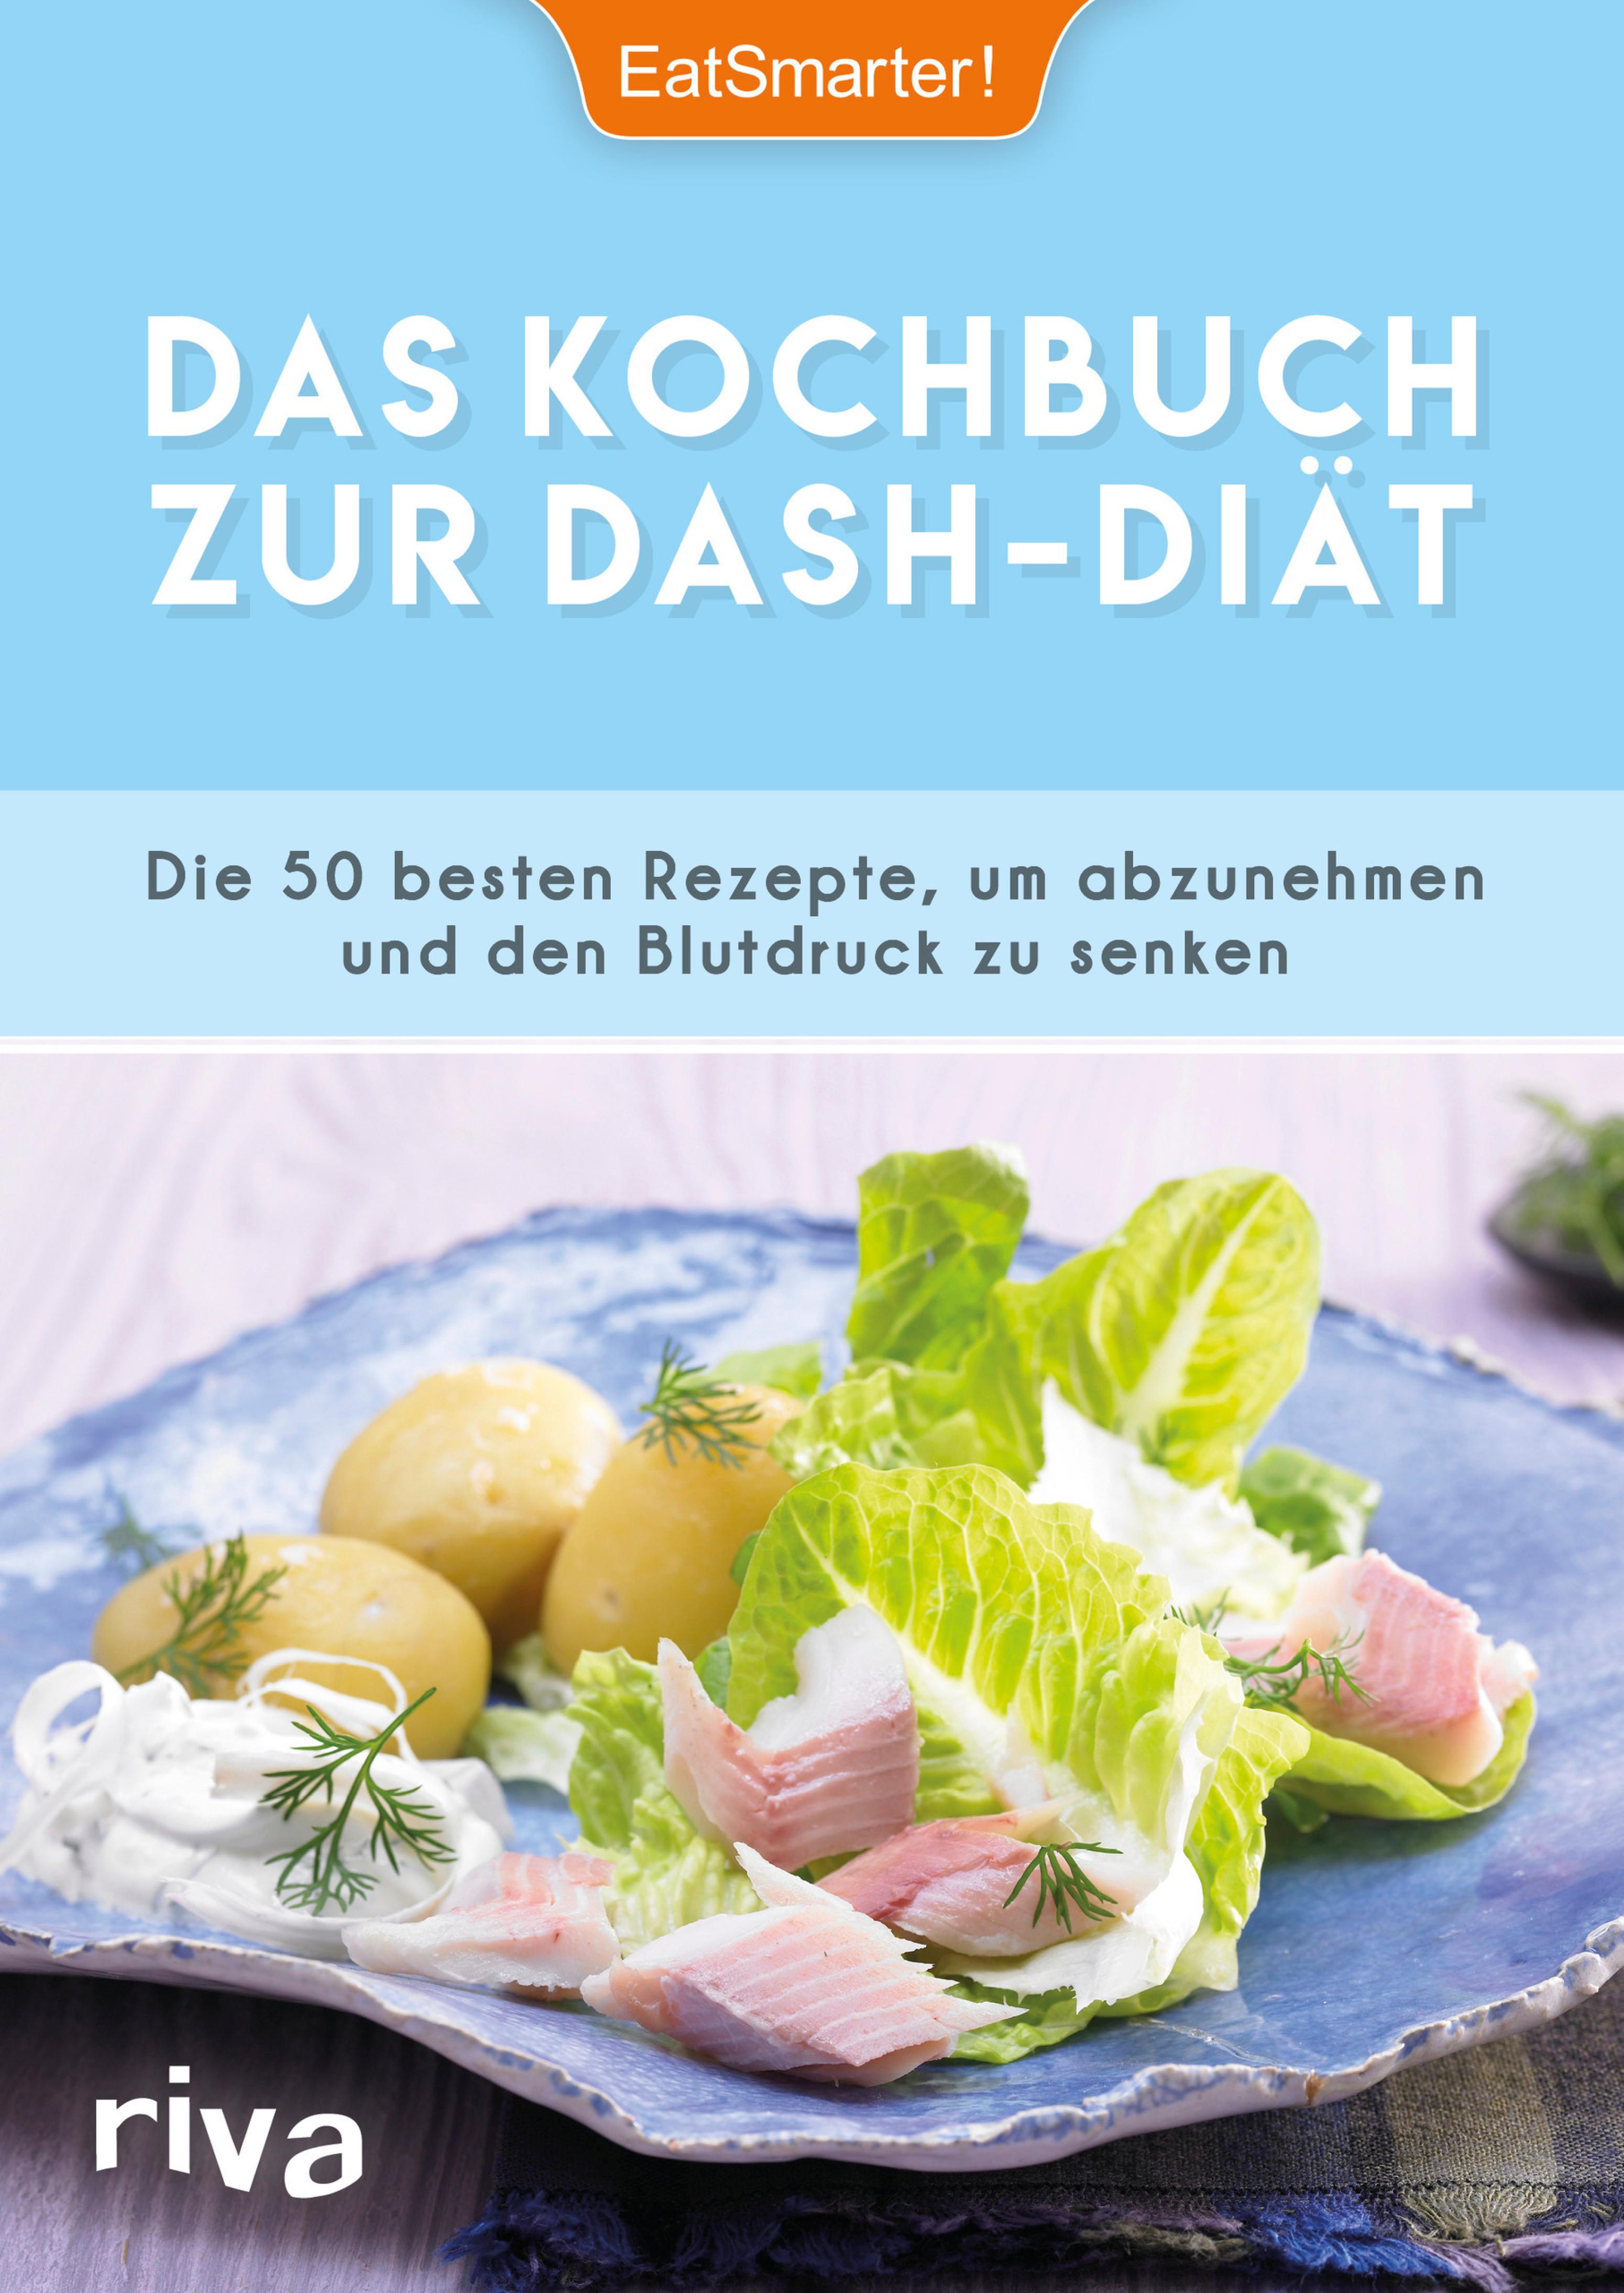 Das Kochbuch zur DASH-Diät (EatSmarter!, Katrin Koelle - Riva)